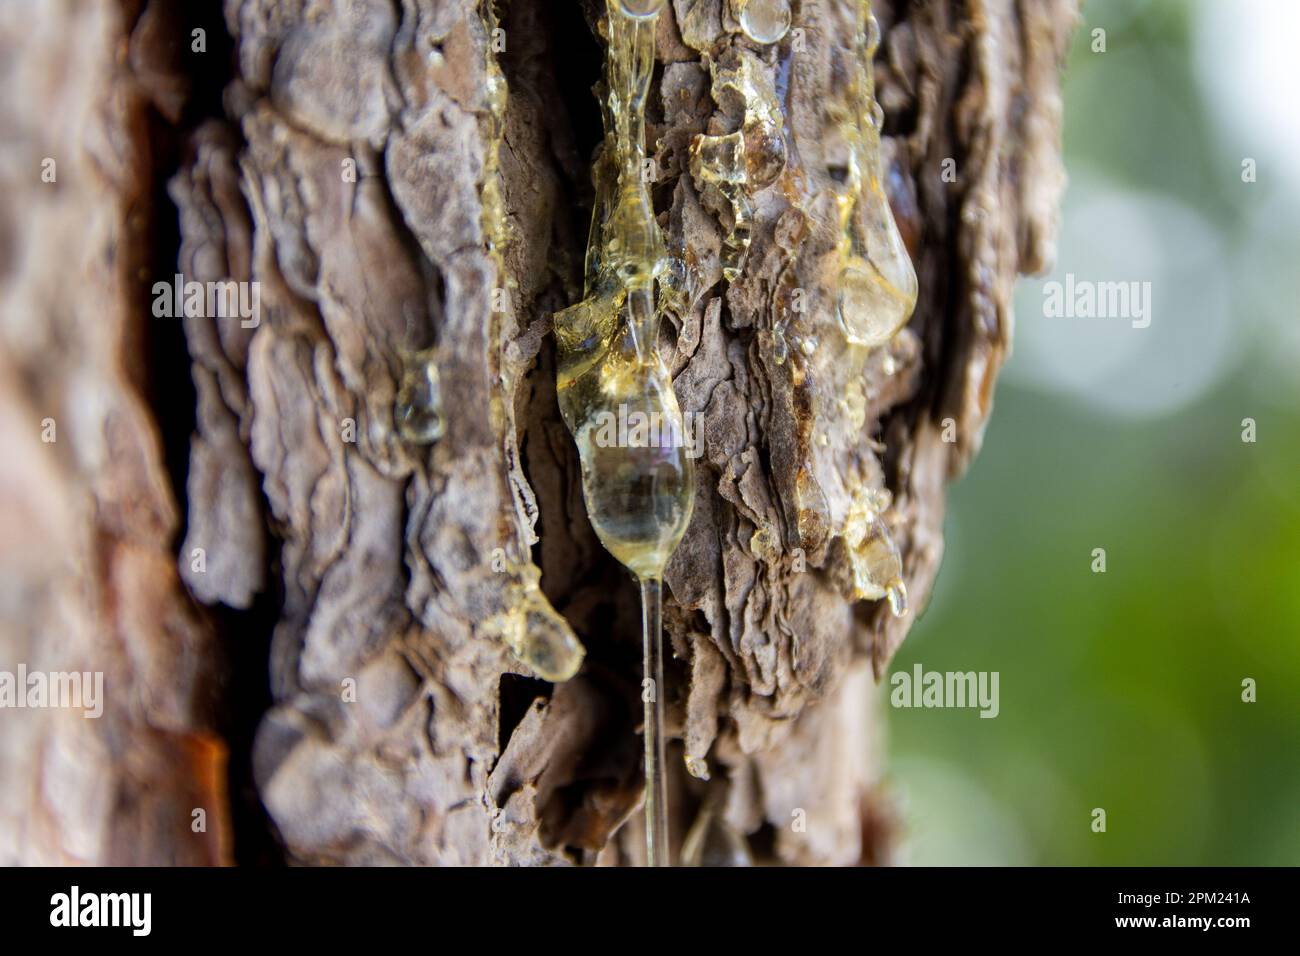 Makroaufnahme von sap-Tröpfchen, die aus einem Baumstamm austreten, die Essenz der Natur wird im Detail festgehalten. Stockfoto